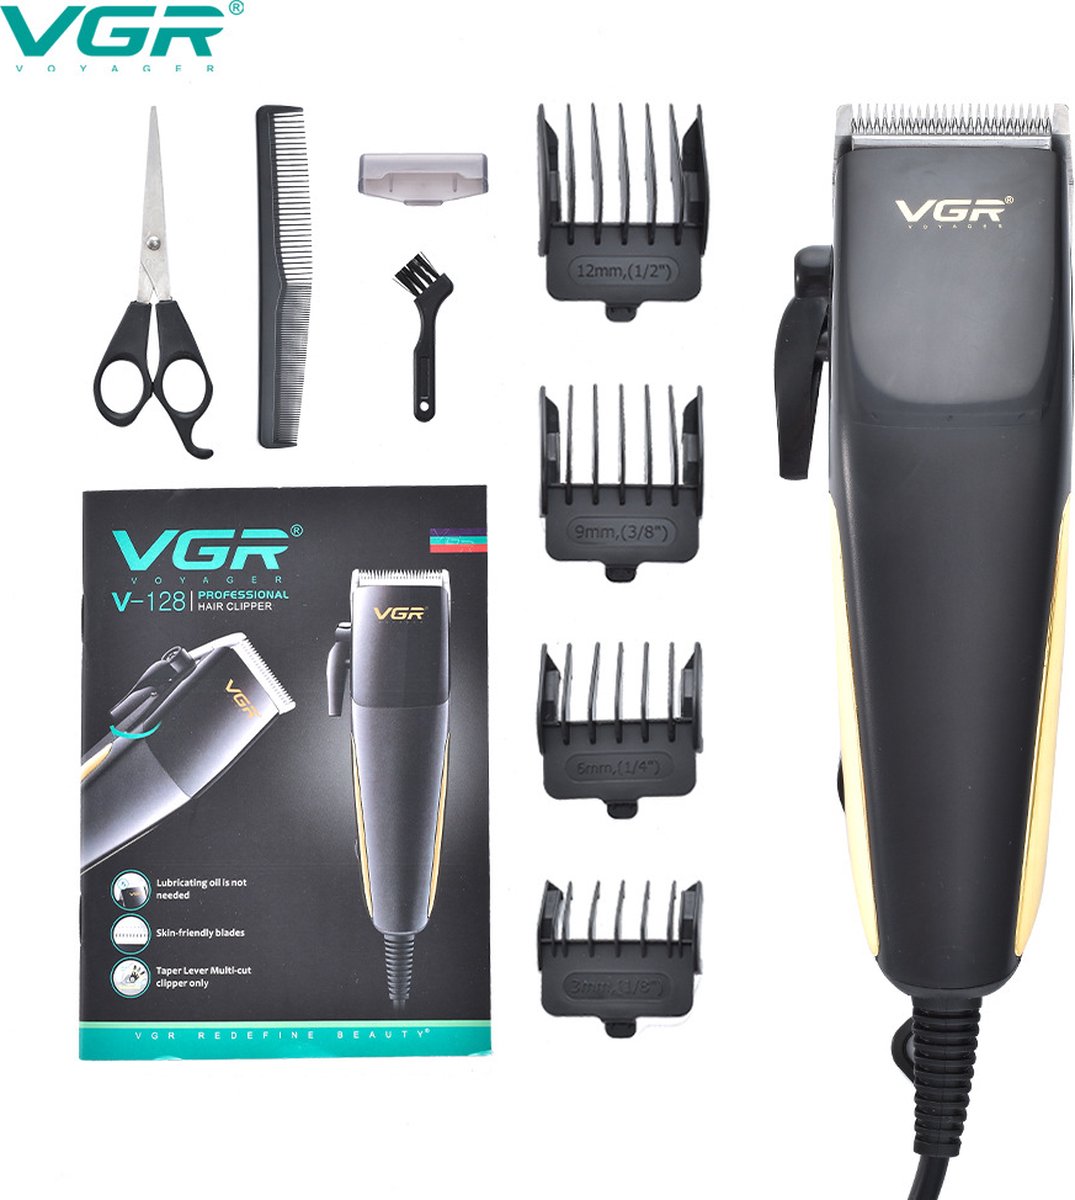 VGR V-128 Professionele Salon-serie Tondeuse/Haartrimmer voor mannen, 180 min. werktijd met 4 lengte-instellingen (Zwart)